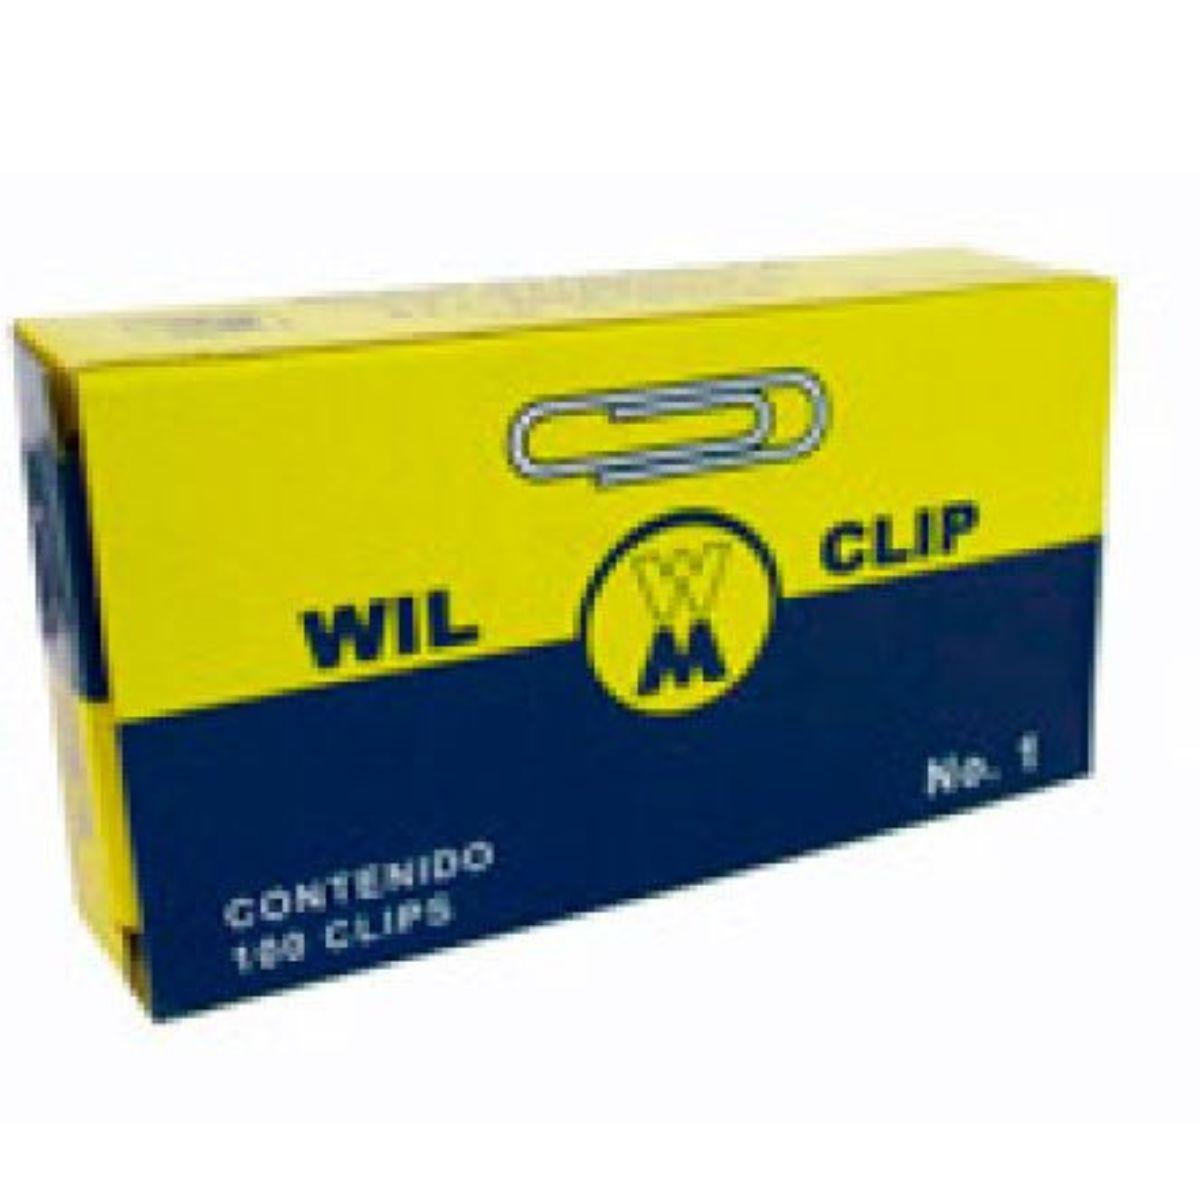 Clip estándar Wilson N°1 - Colmenero Shop